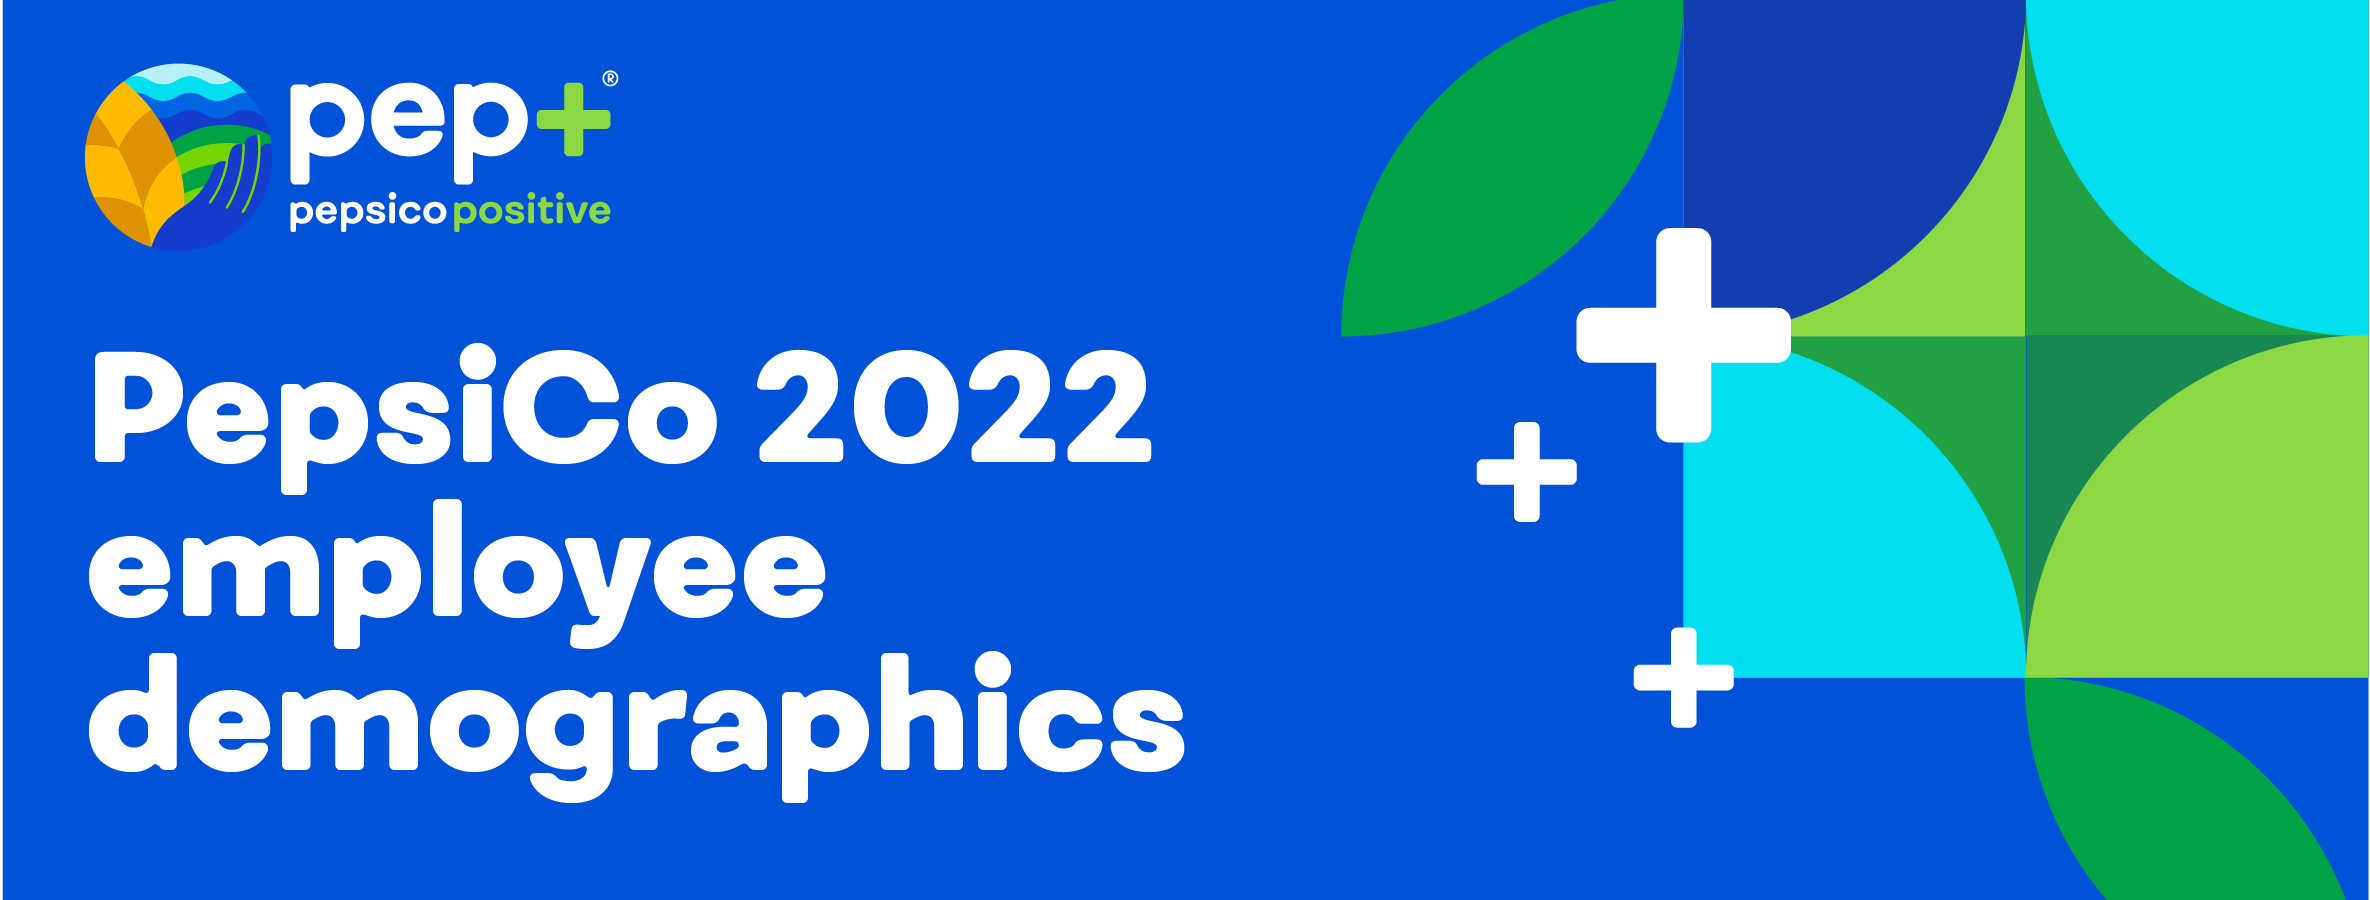 PepsiCo 2022 employee demographics